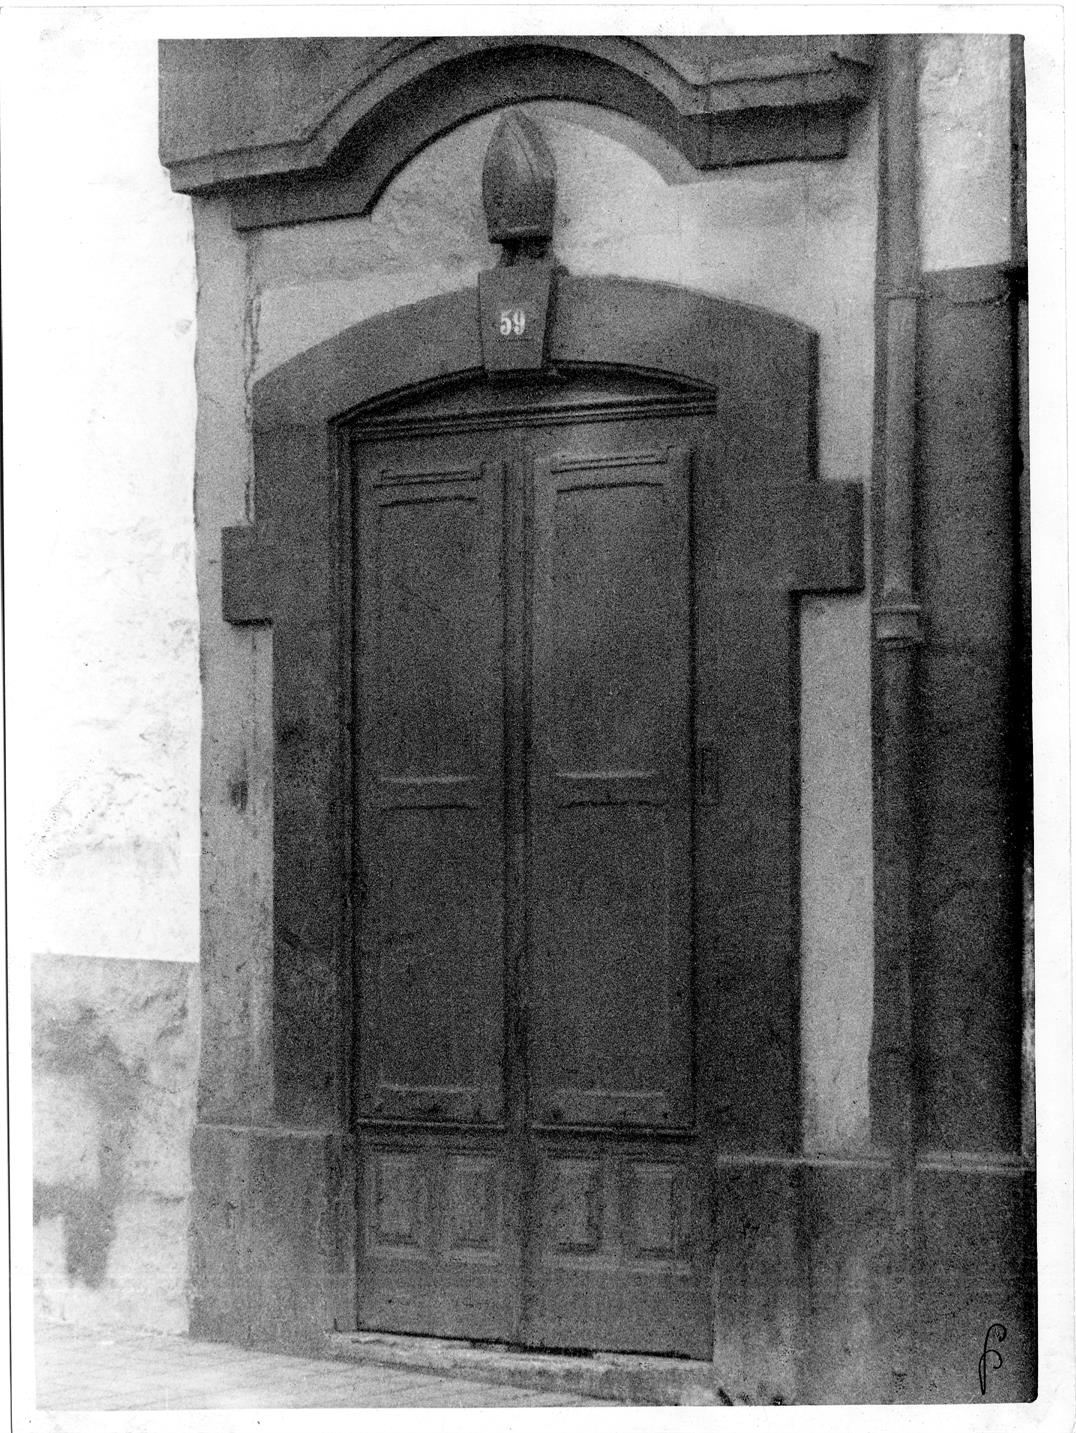 Aspectos arqueológicos e artísticos da cidade do Porto : uma porta da rua Formosa, num prédio já demolido